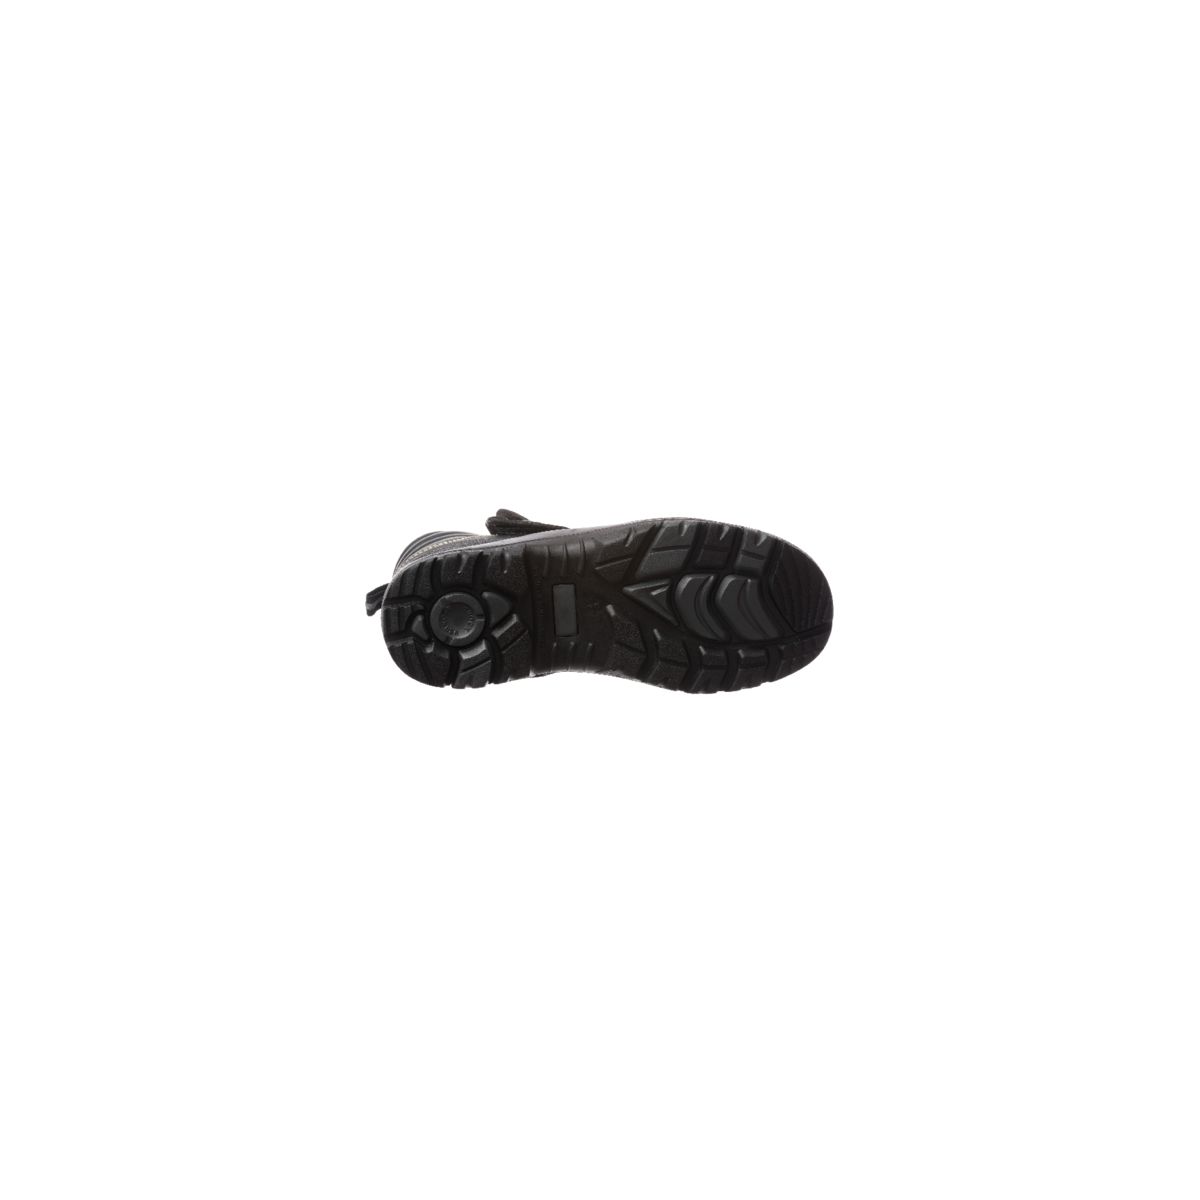 Chaussure de sécurité QANDILITE S3 SRC HRO soudeur composite - COVERGUARD - Taille 46 1